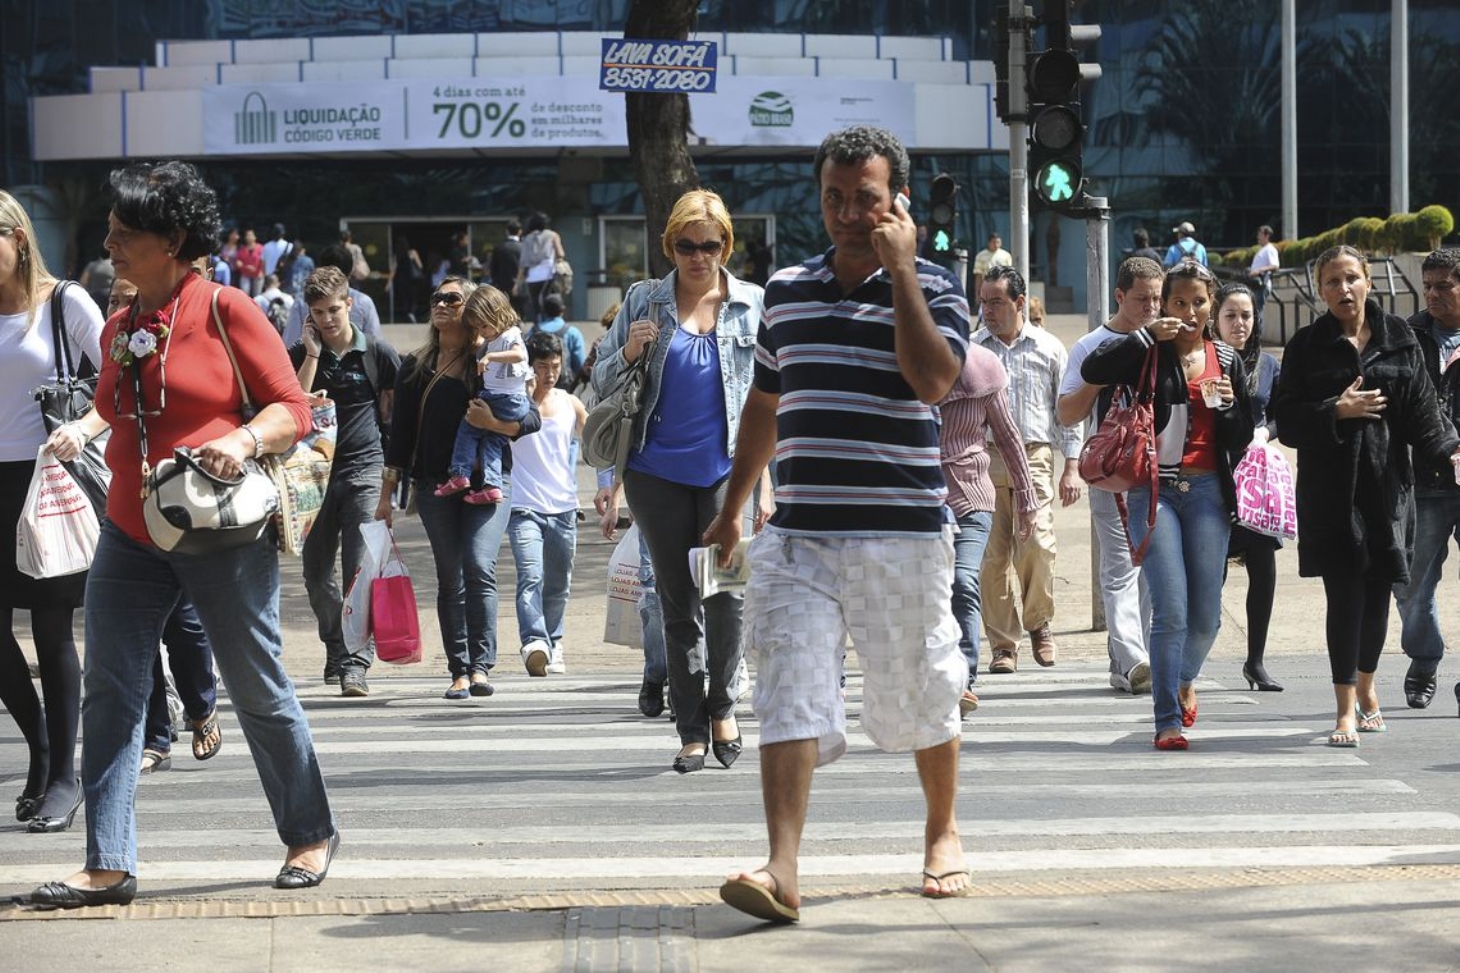 Taxa de desemprego no Brasil cai para 11,8chr37, revela IBGE | Jornal da Orla